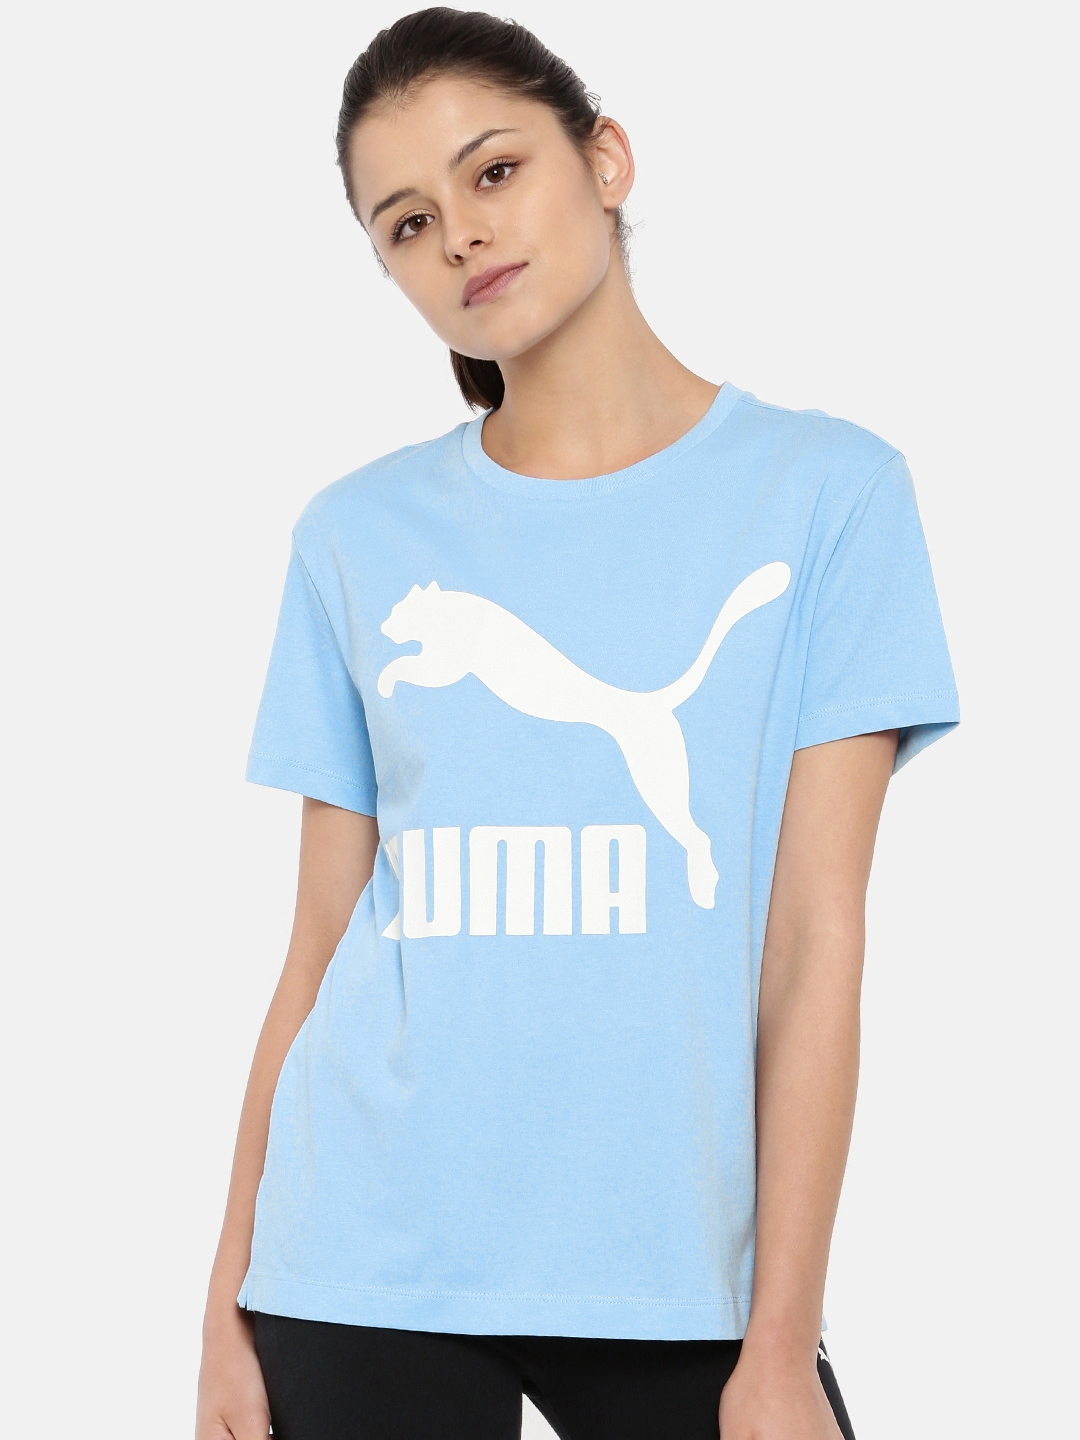 puma shirts myntra